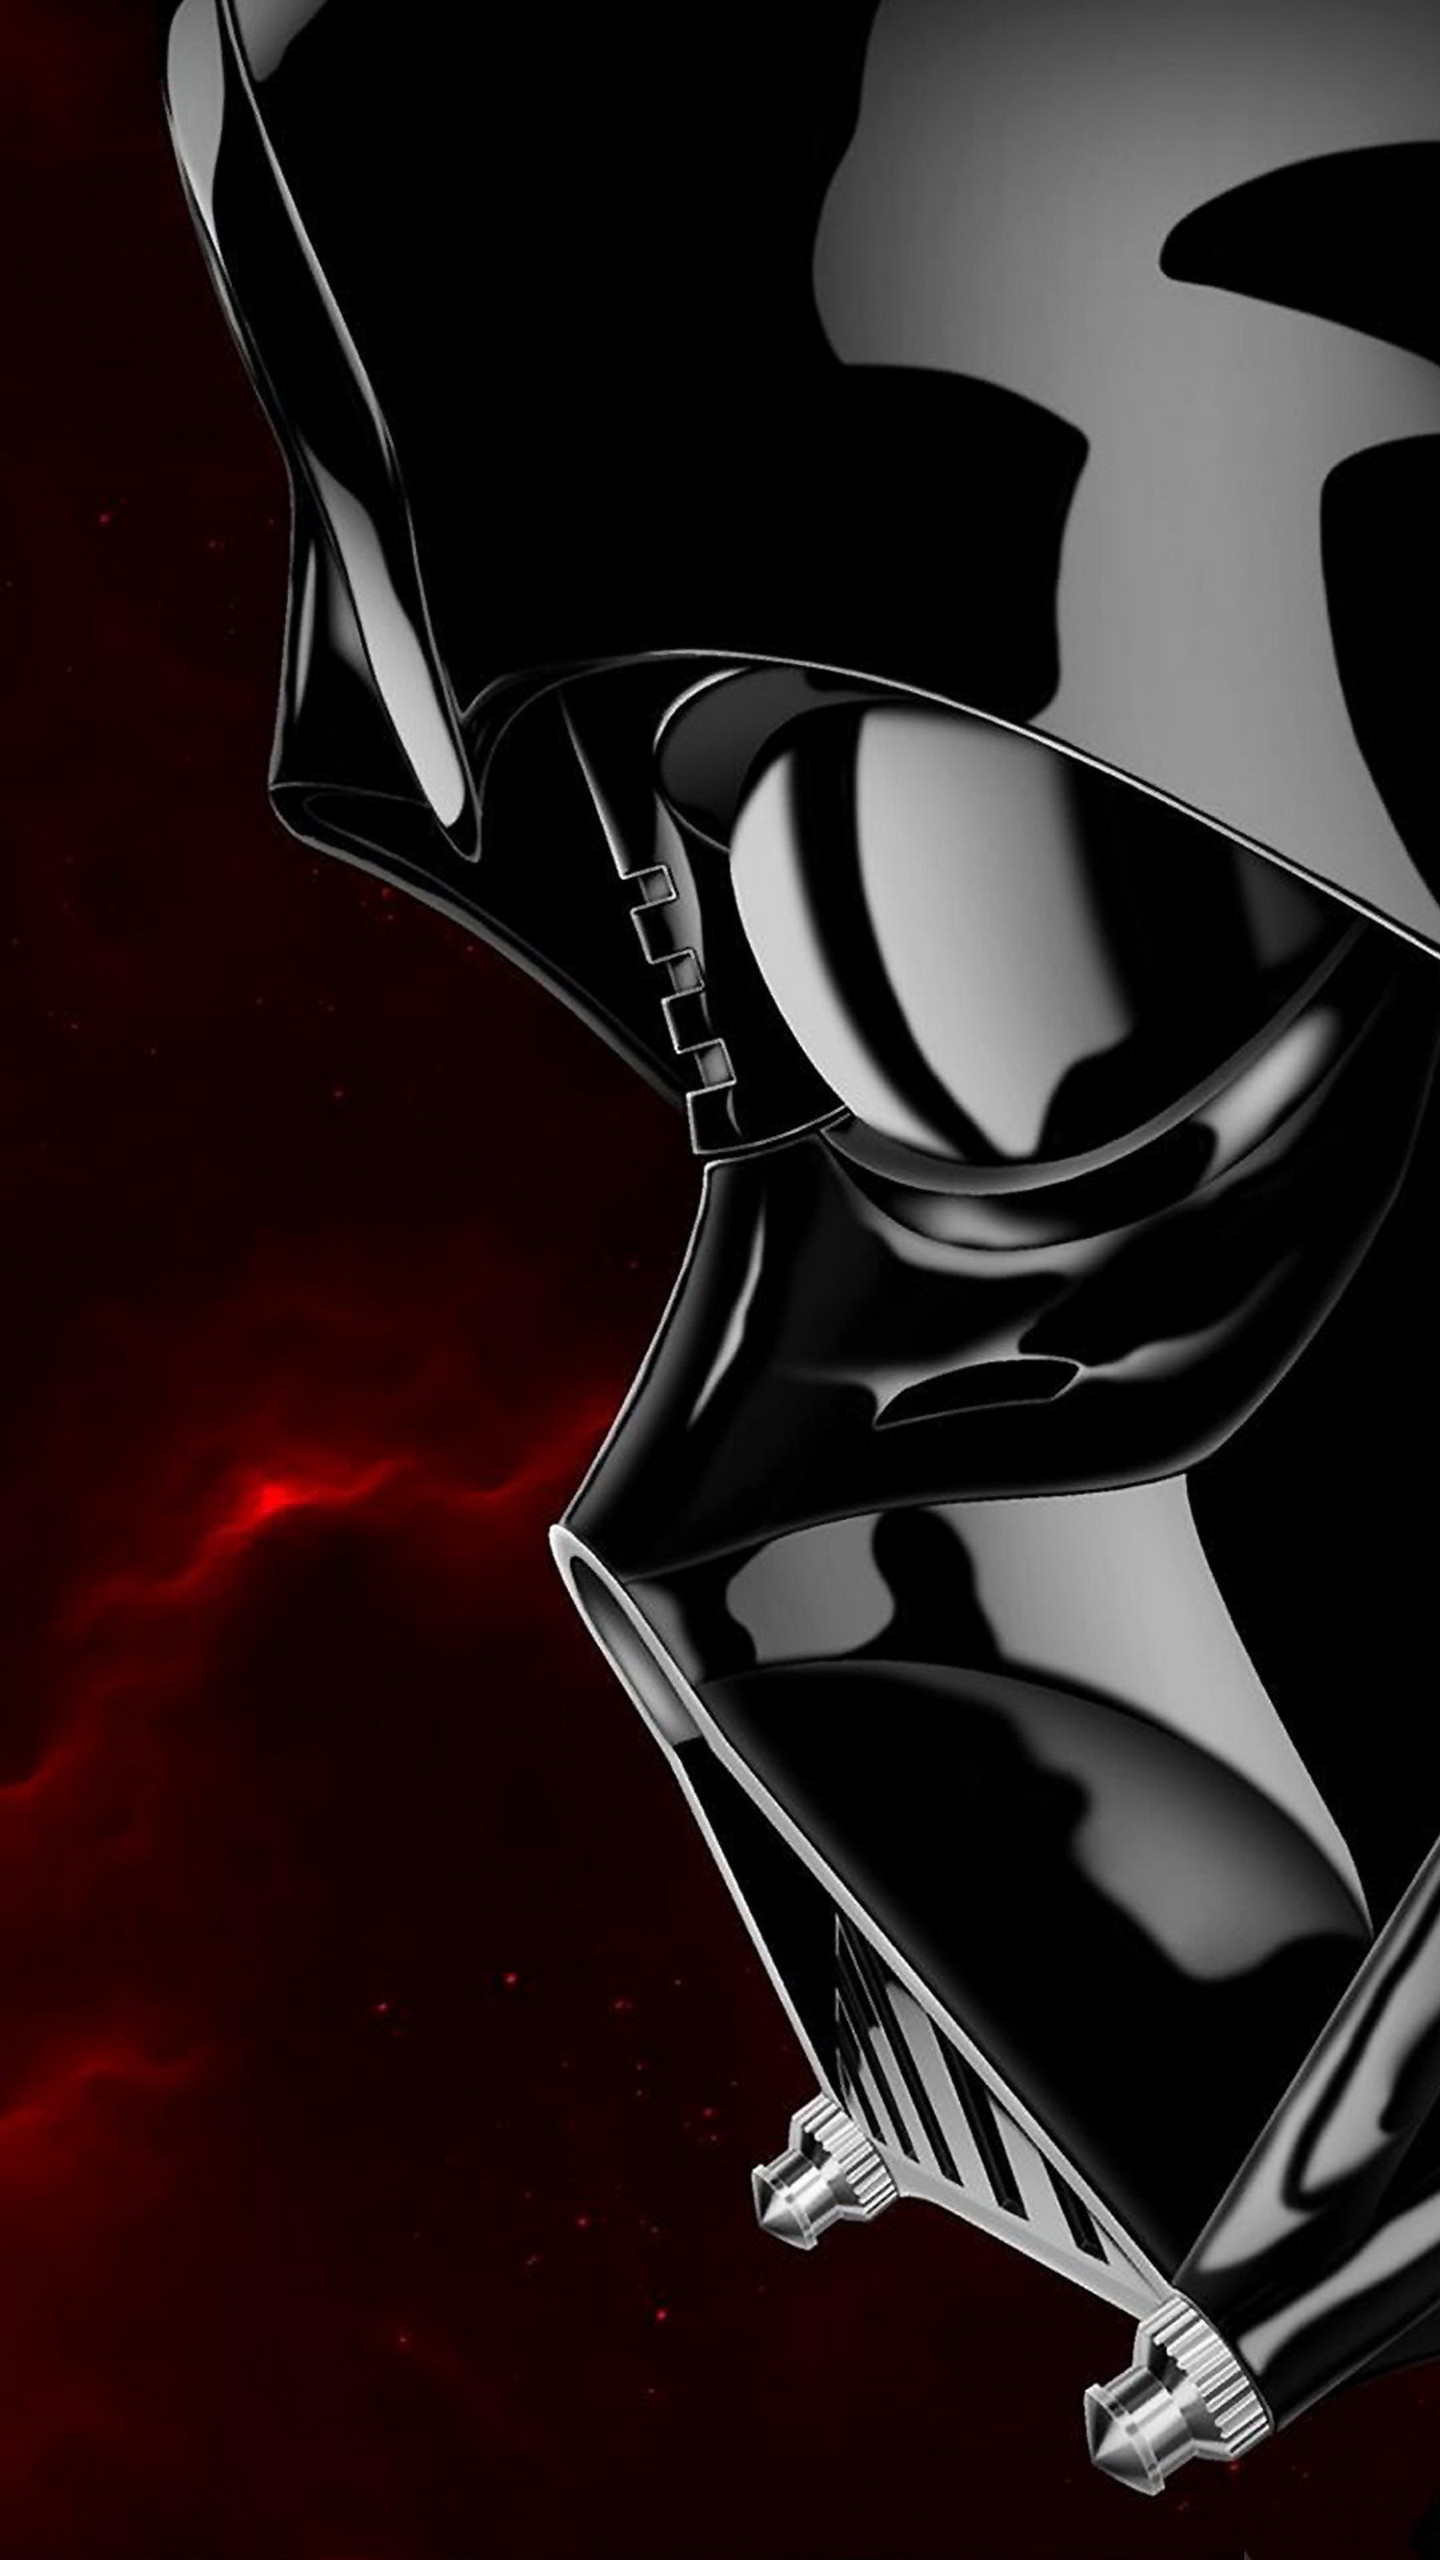 1440x2560 Darth Vader Star Wars Illustration Lock Screen 14402560 Samsung 